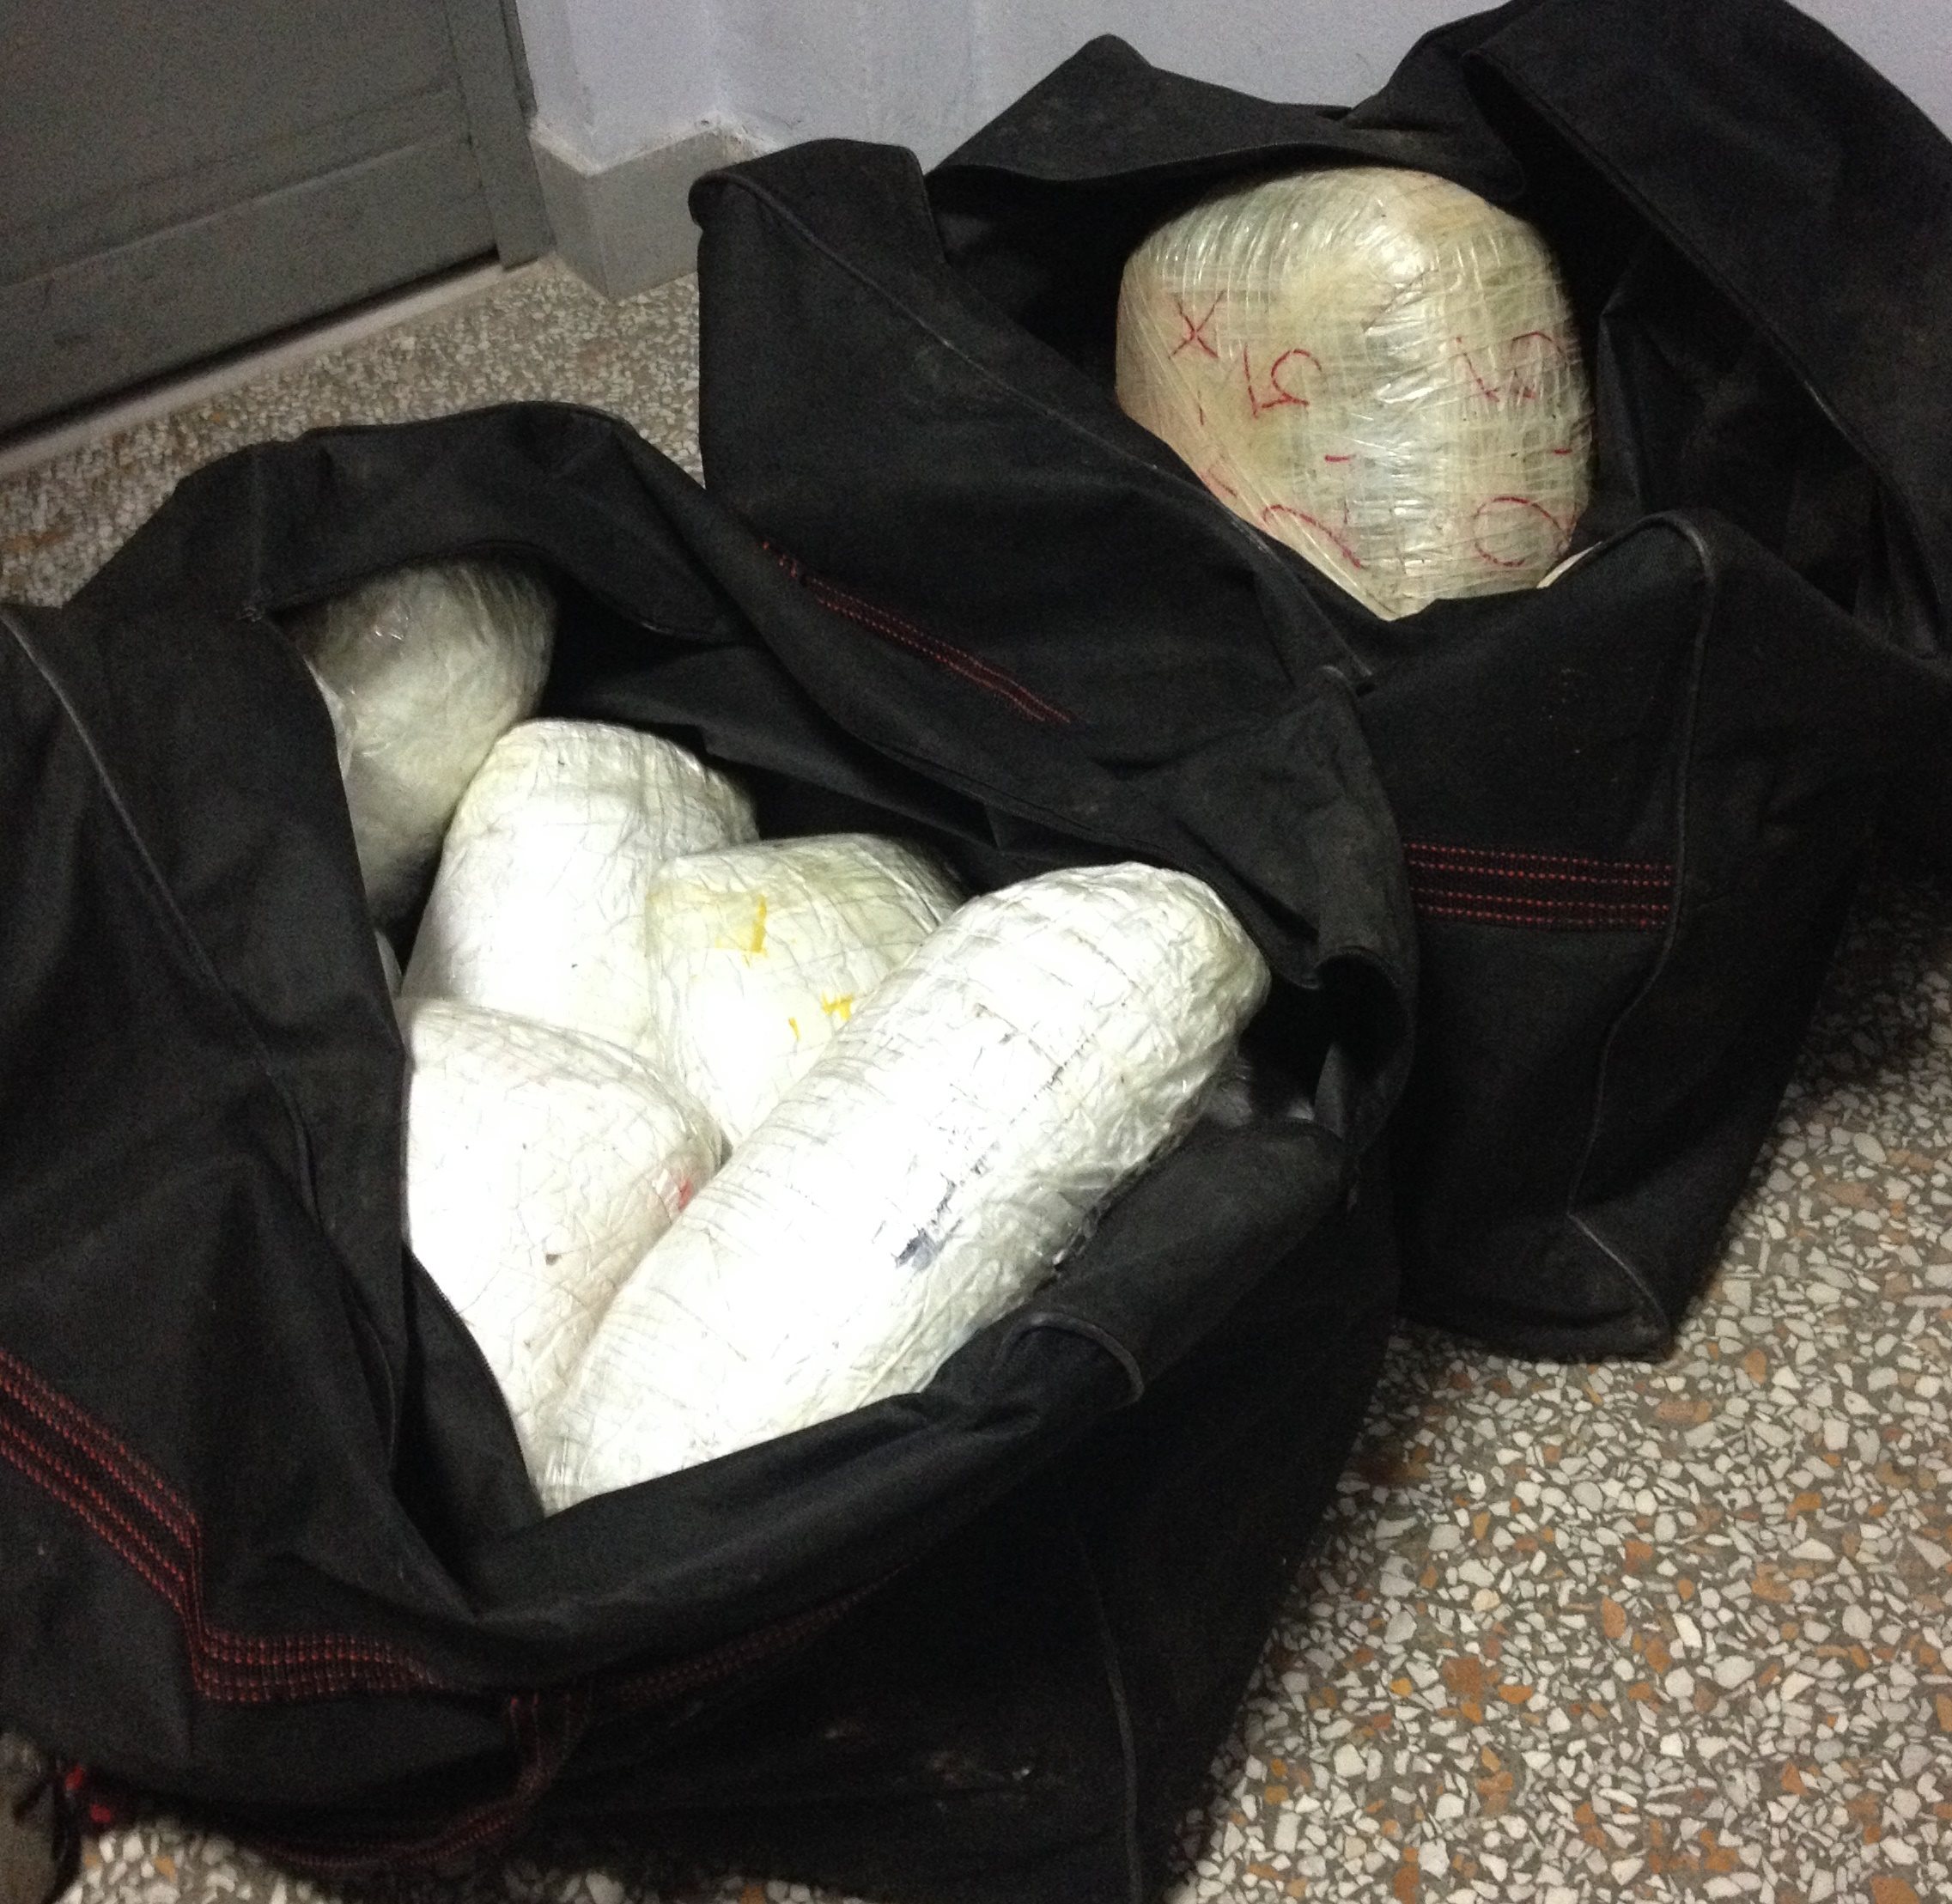 Προφυλακιστέοι οι τρεις που είχαν συλληφθεί στο Αντίρριο με 50 κιλά κάνναβης